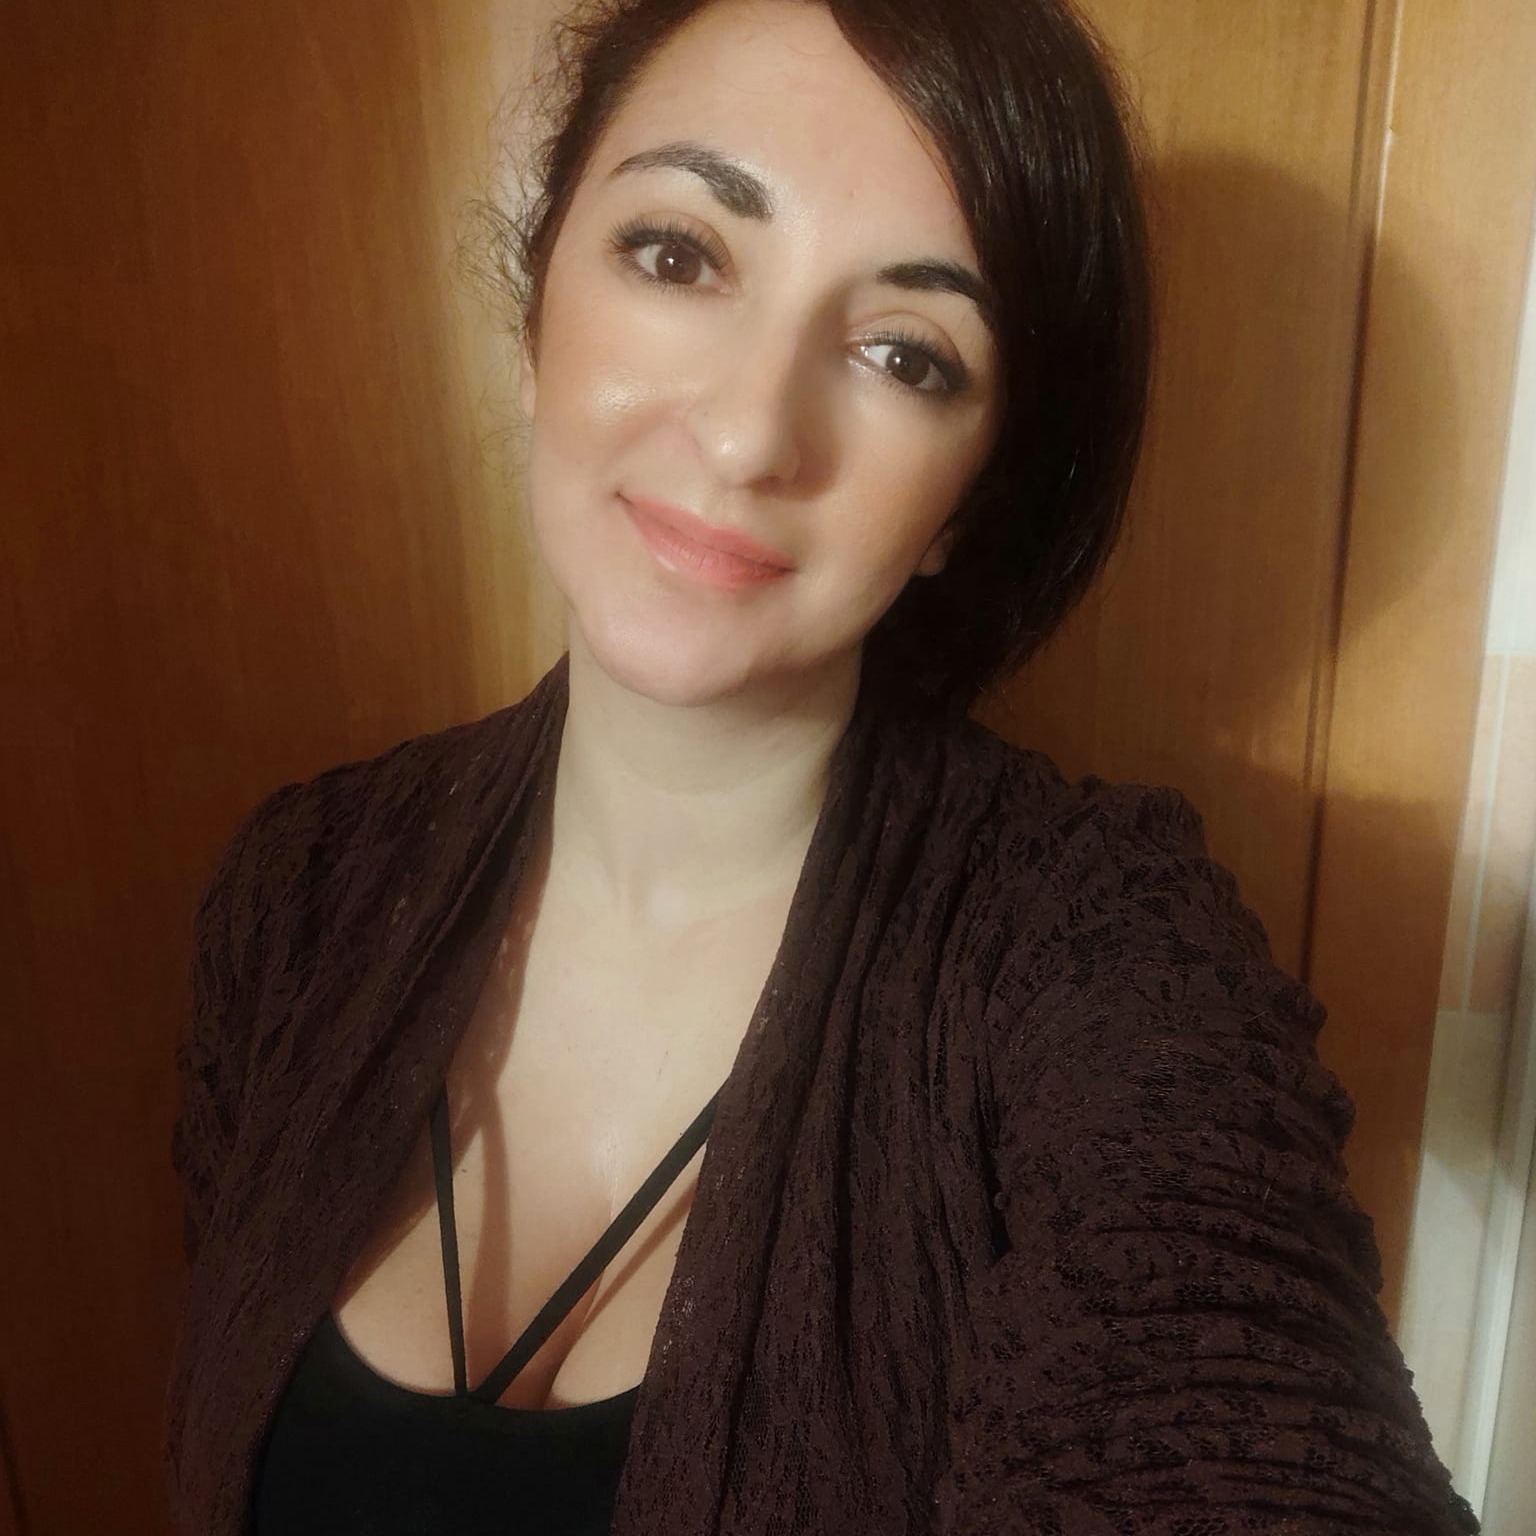 Conversazione-intervista con Annina Botta, una trentenne dalla penna facile ma dolce dolce (almeno così appare)